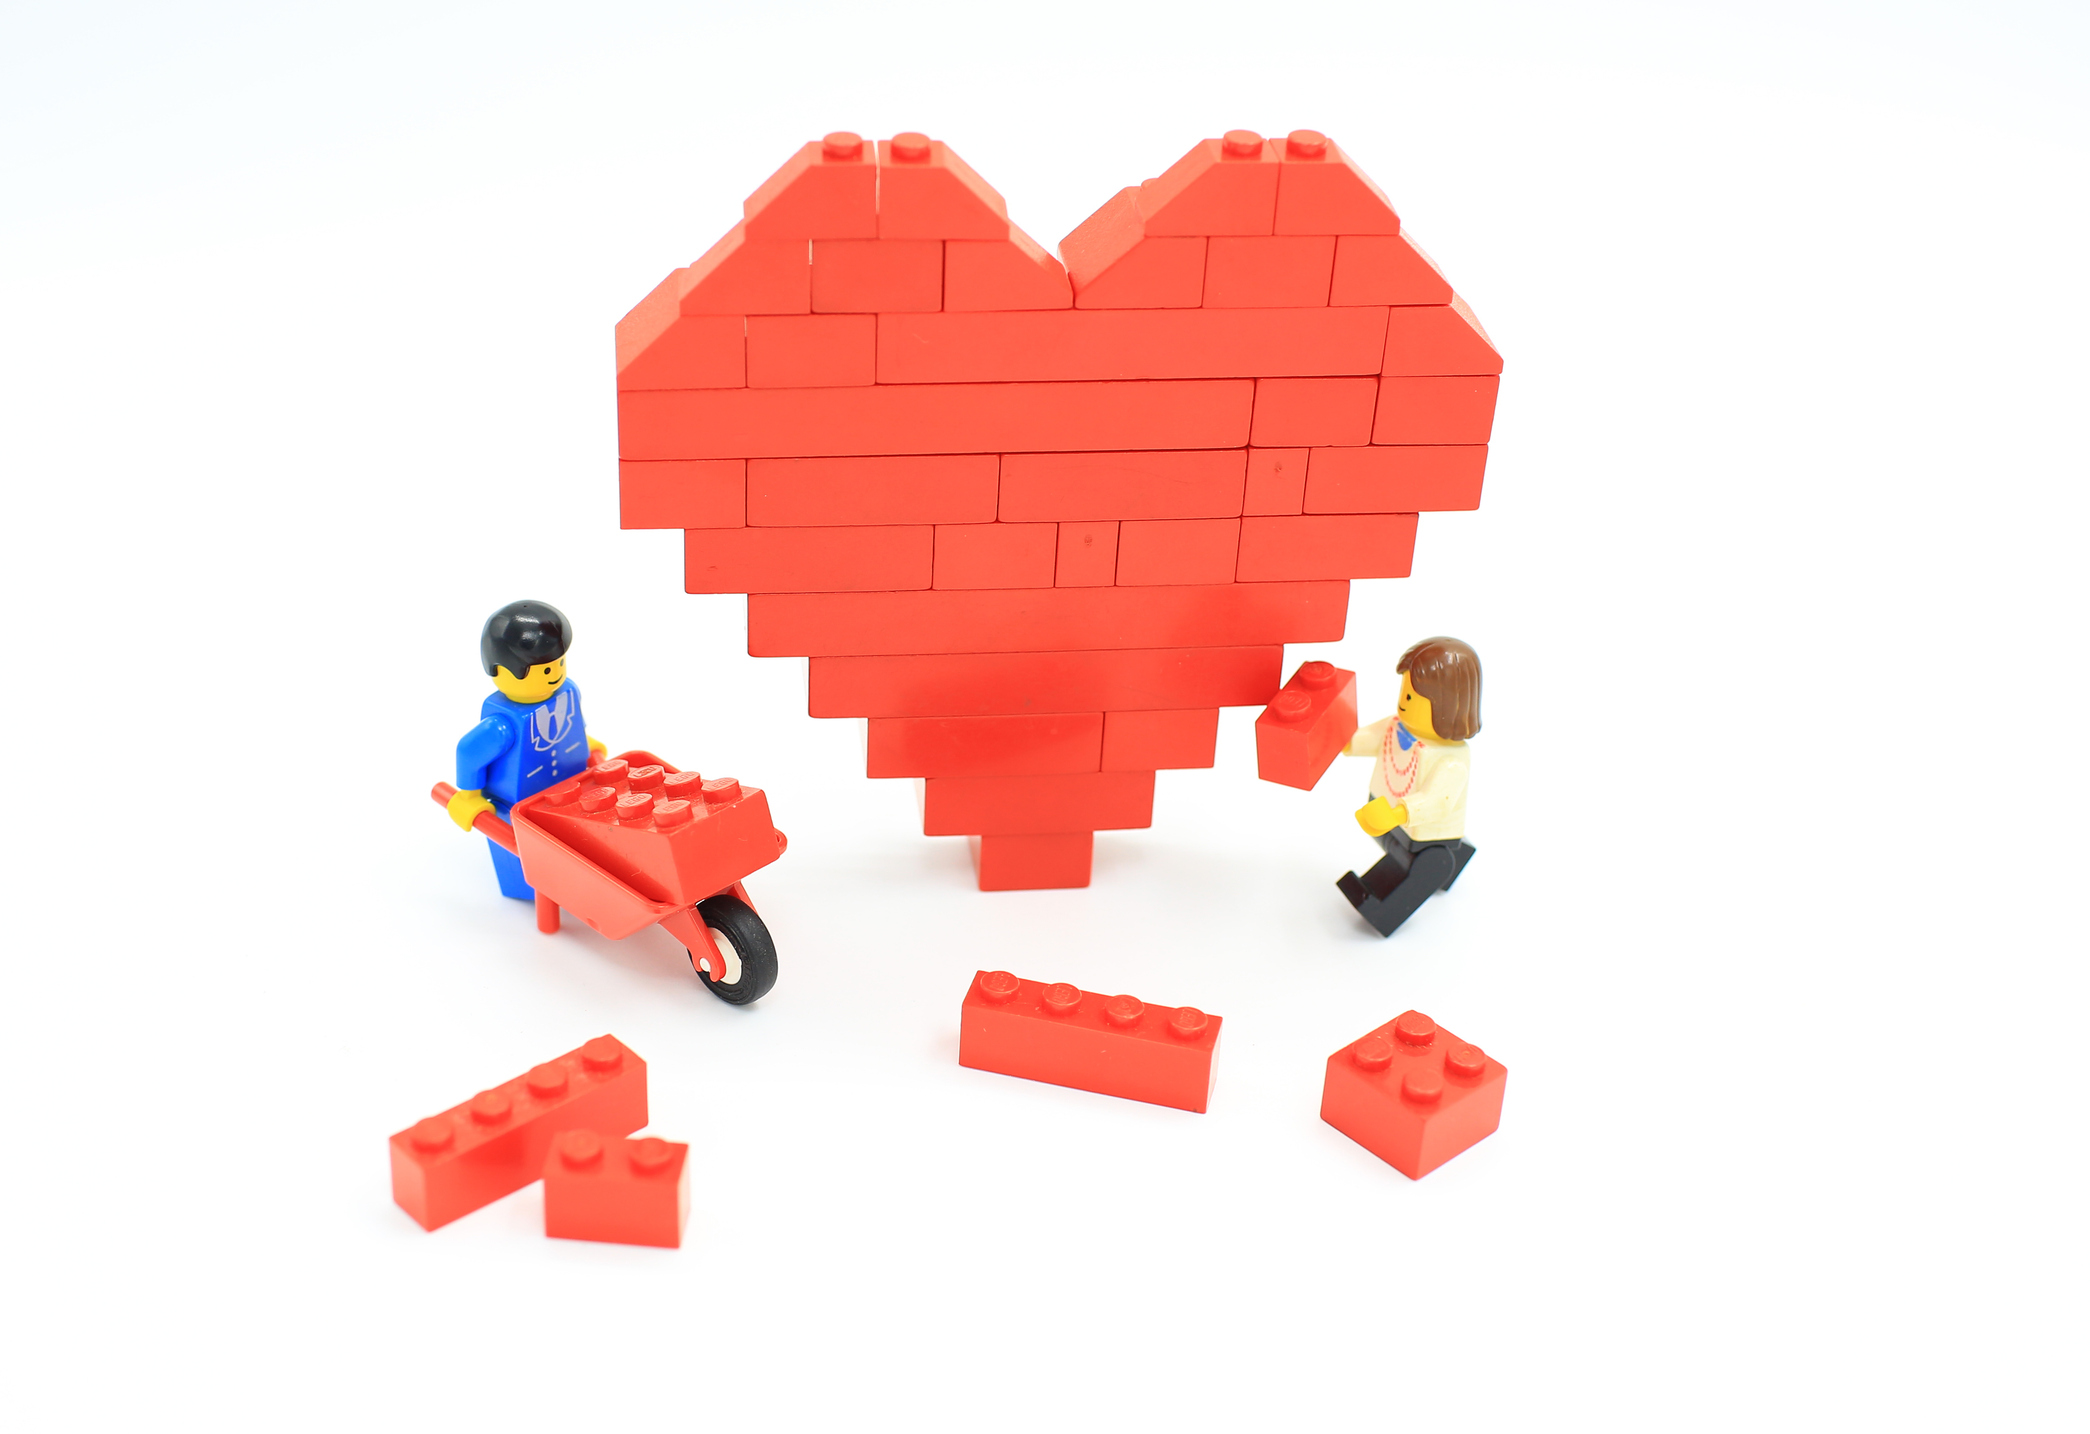 Lego men build a heart